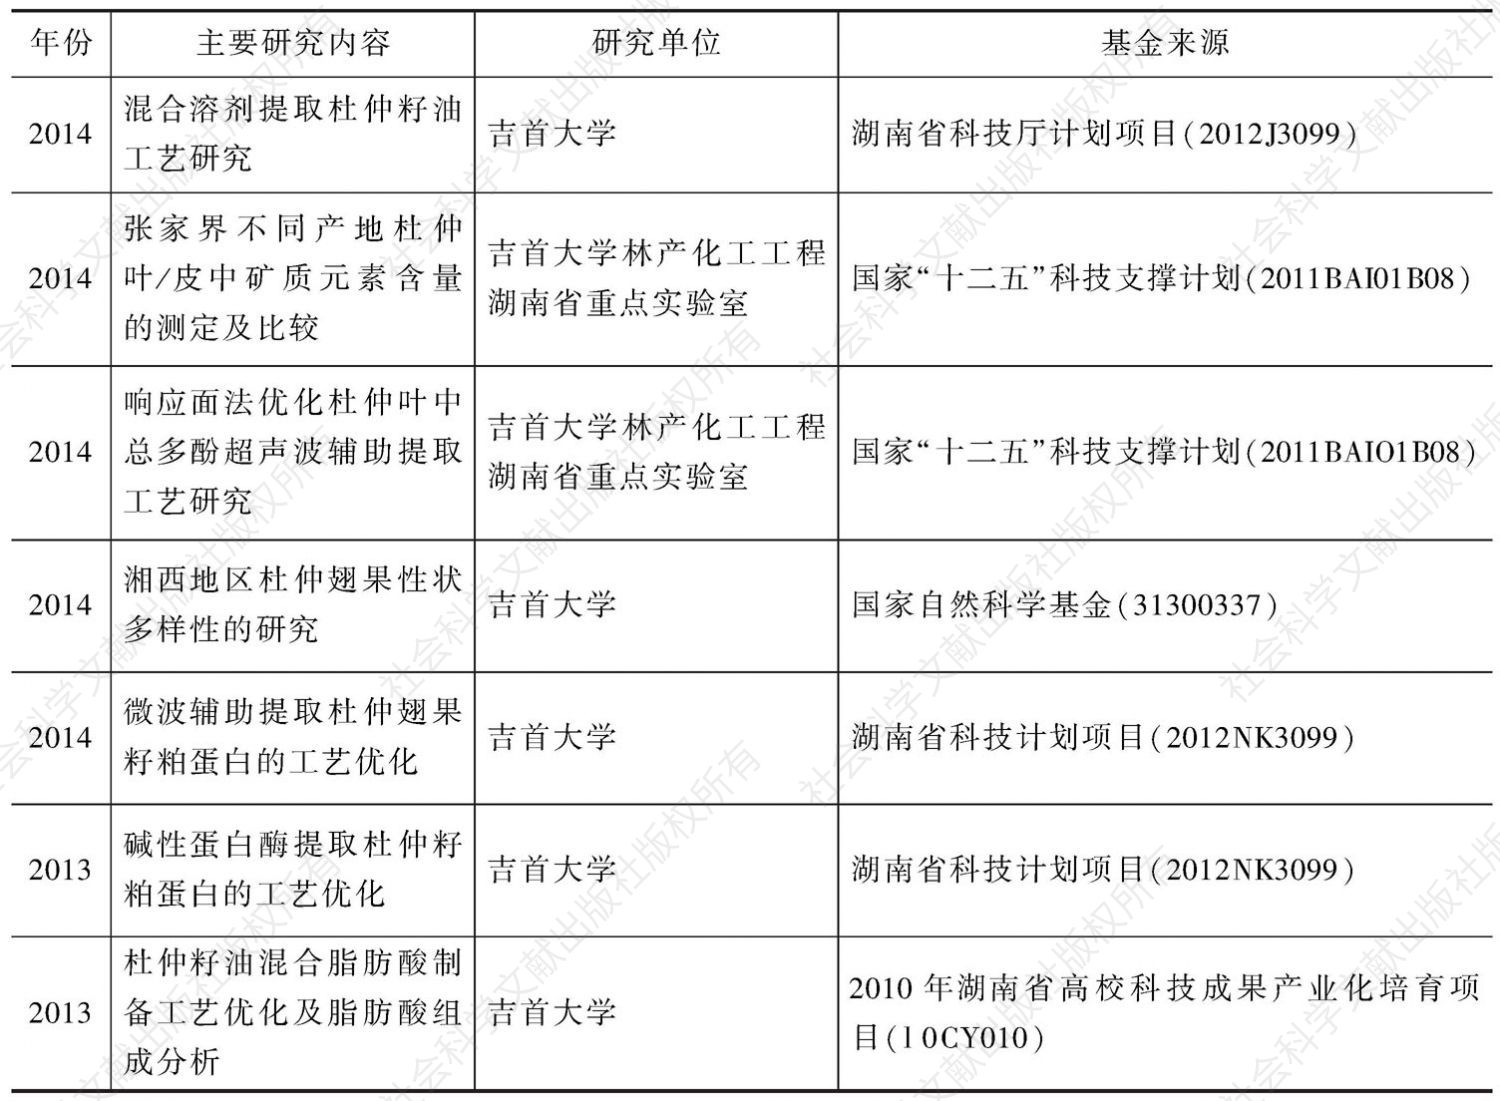 表7 不同年份湖南省杜仲科研立项和研究内容统计